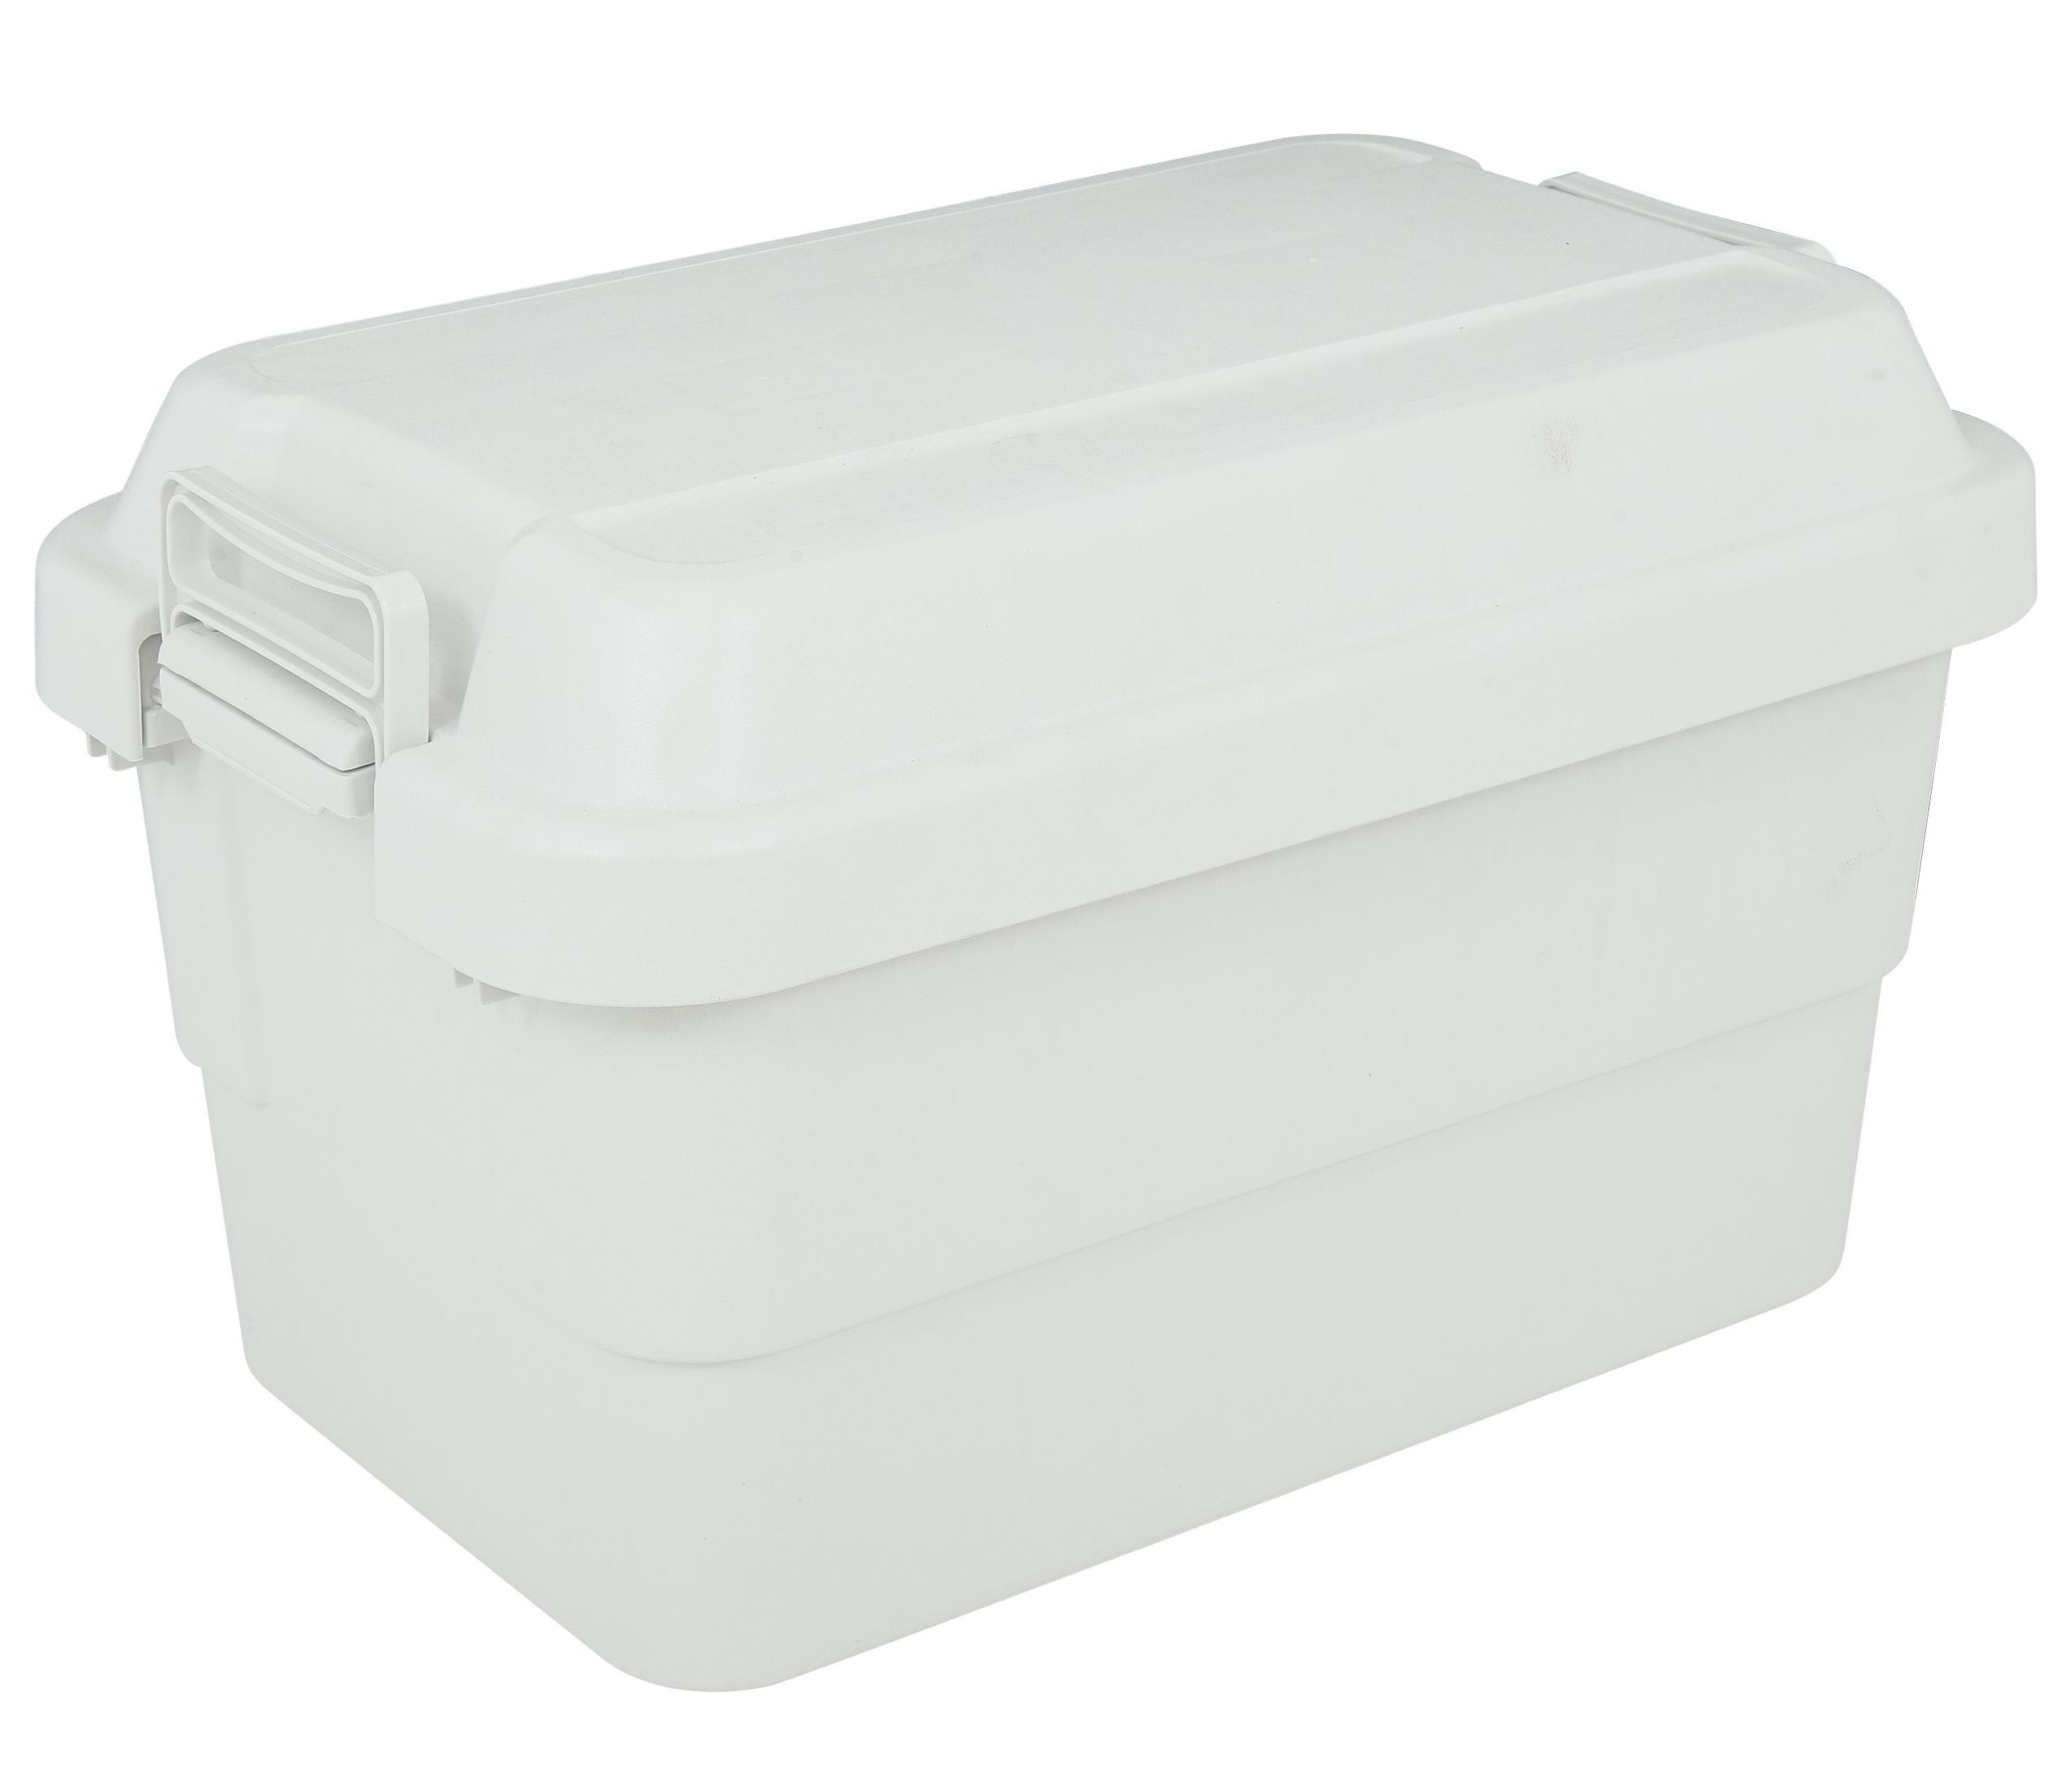 กล่องแค้มปิ้ง กล่องอเนกประสงค์ แข็งแรง นั่งได้ กล่องแคมป์ปิ้ง กล่องเก็บของสำหรับตั้งแคมป์ ขนาด 50 ลิตร ท็อปไม้ Top กล่อง Index Muji Trunk Cargo 50 L